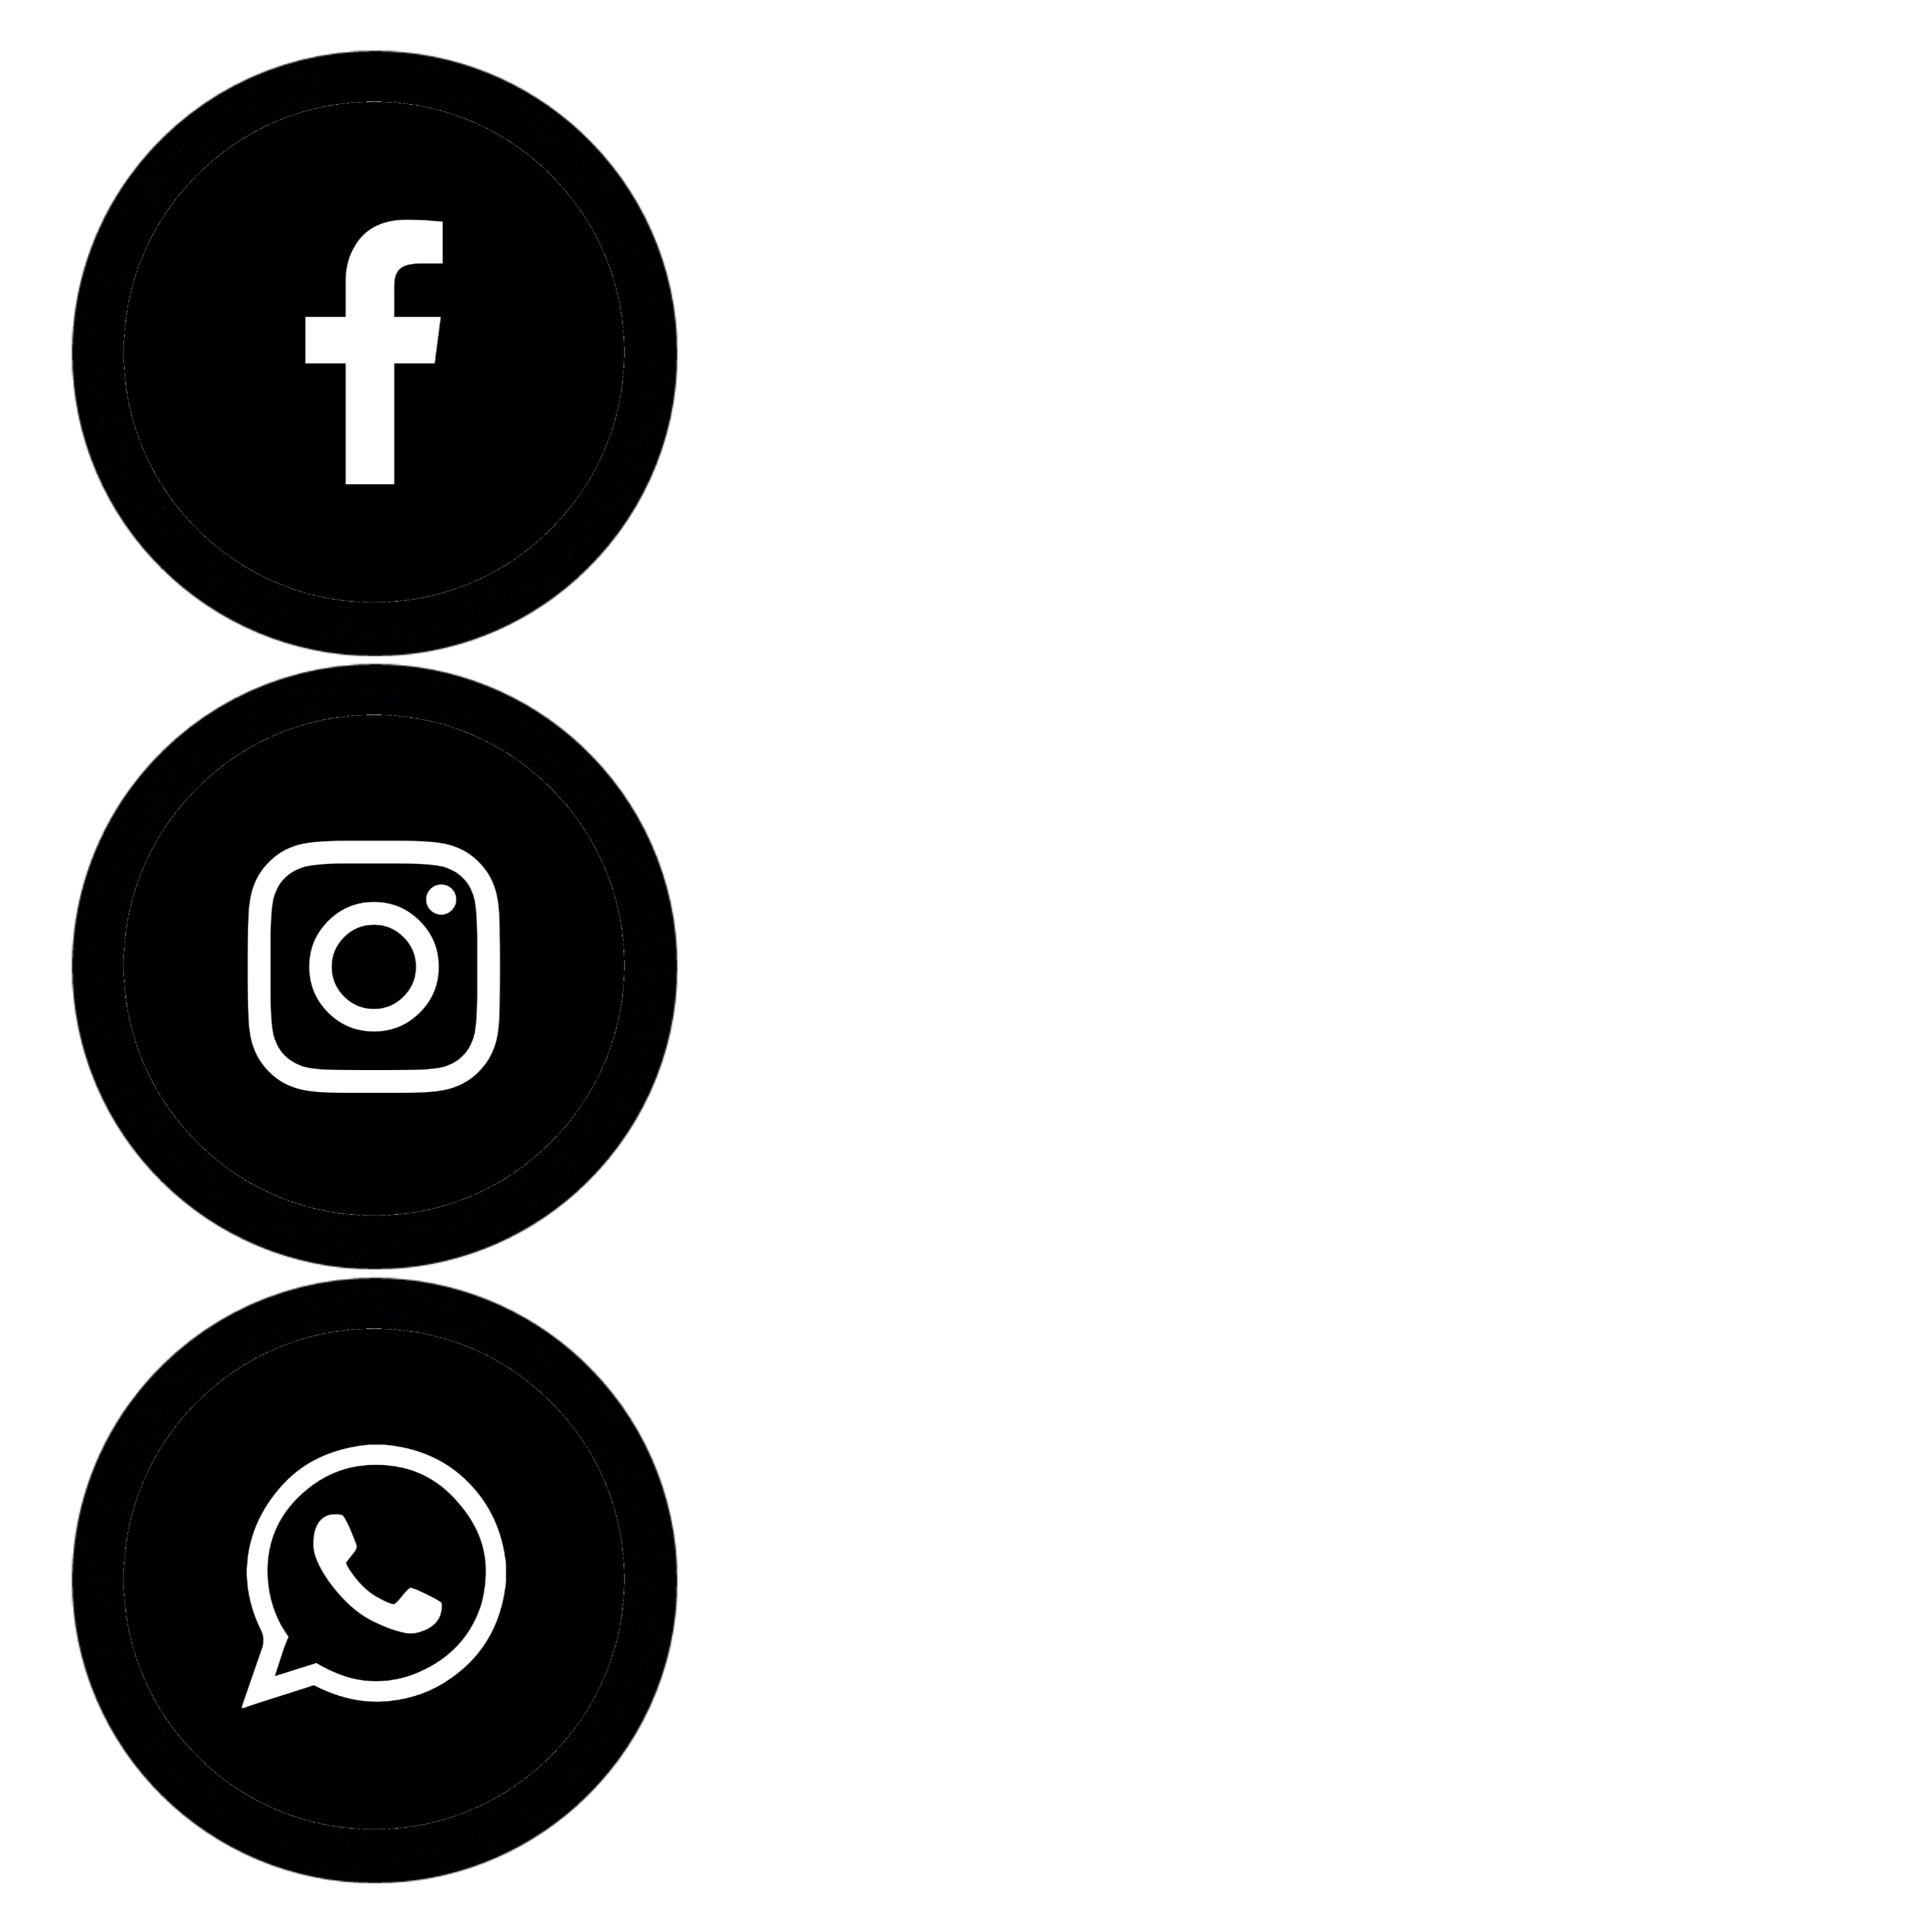 Facebook Whatsapp Instagram Iconos Y Logotipos De Aplicaciones Hot Sex Picture 